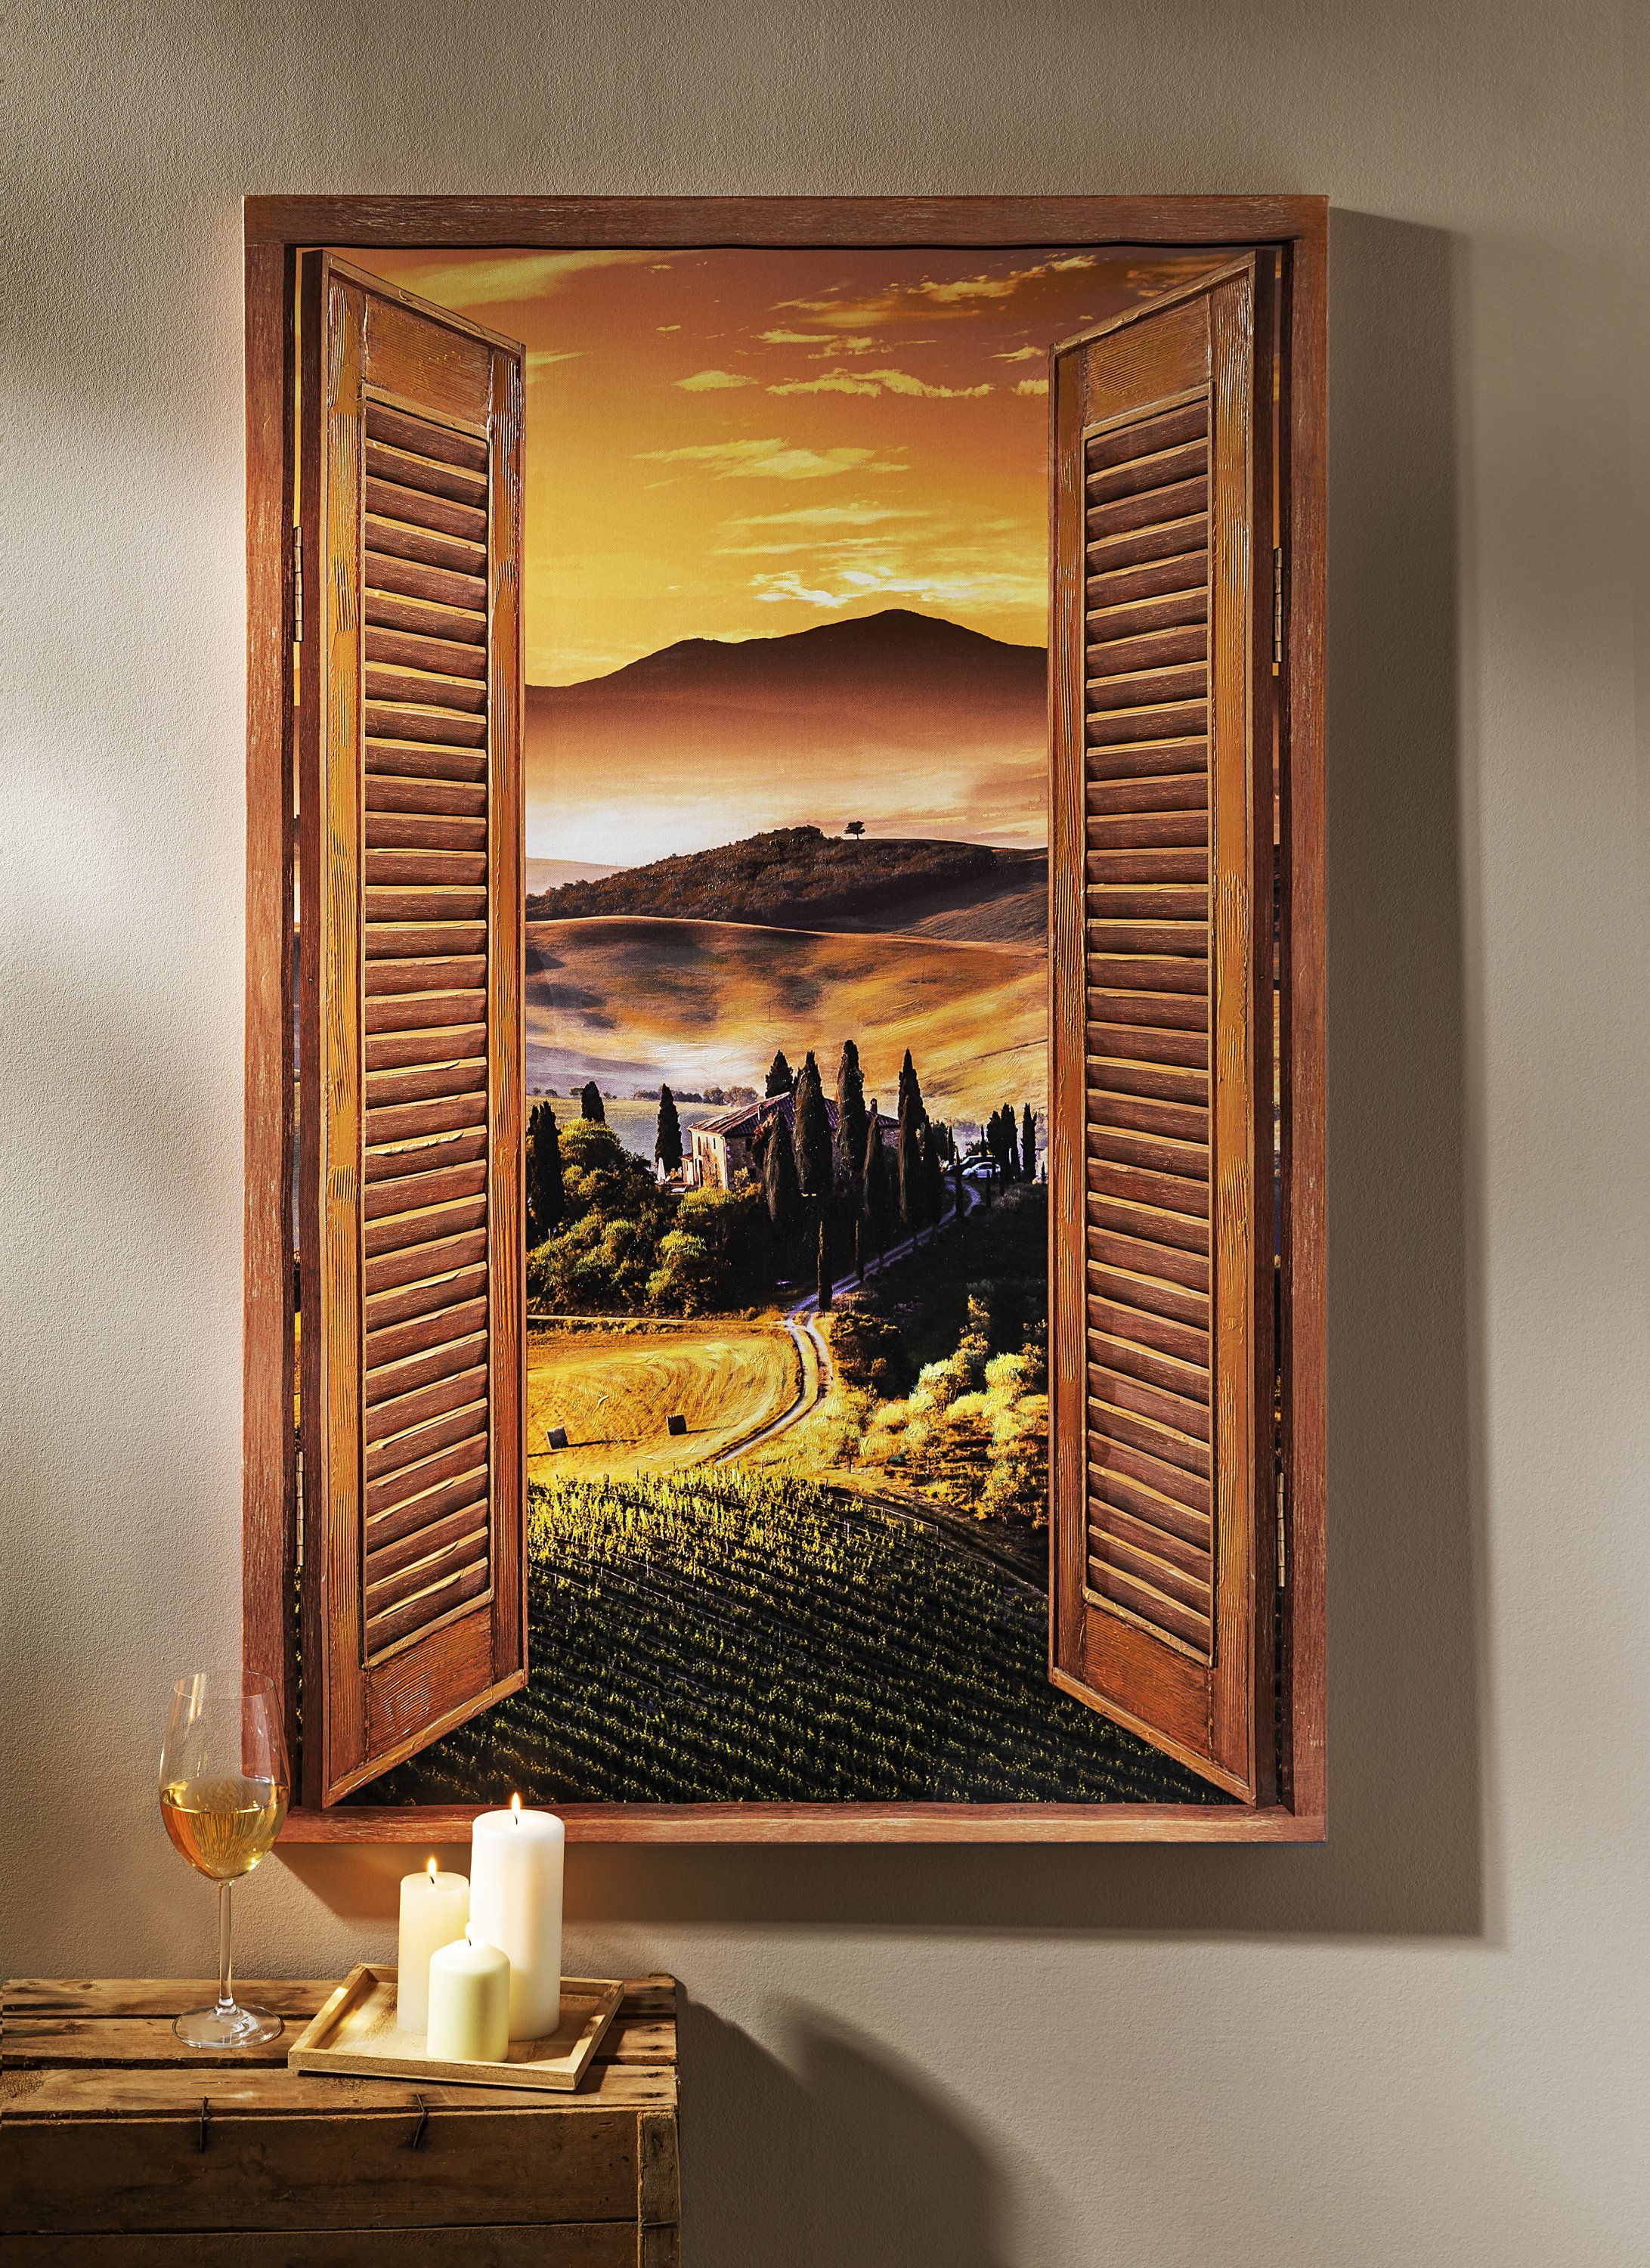 Bild Fotoleinwand Fensterblick  Toskana  Poster Wandbild 120 cm*80 cm 667  d 